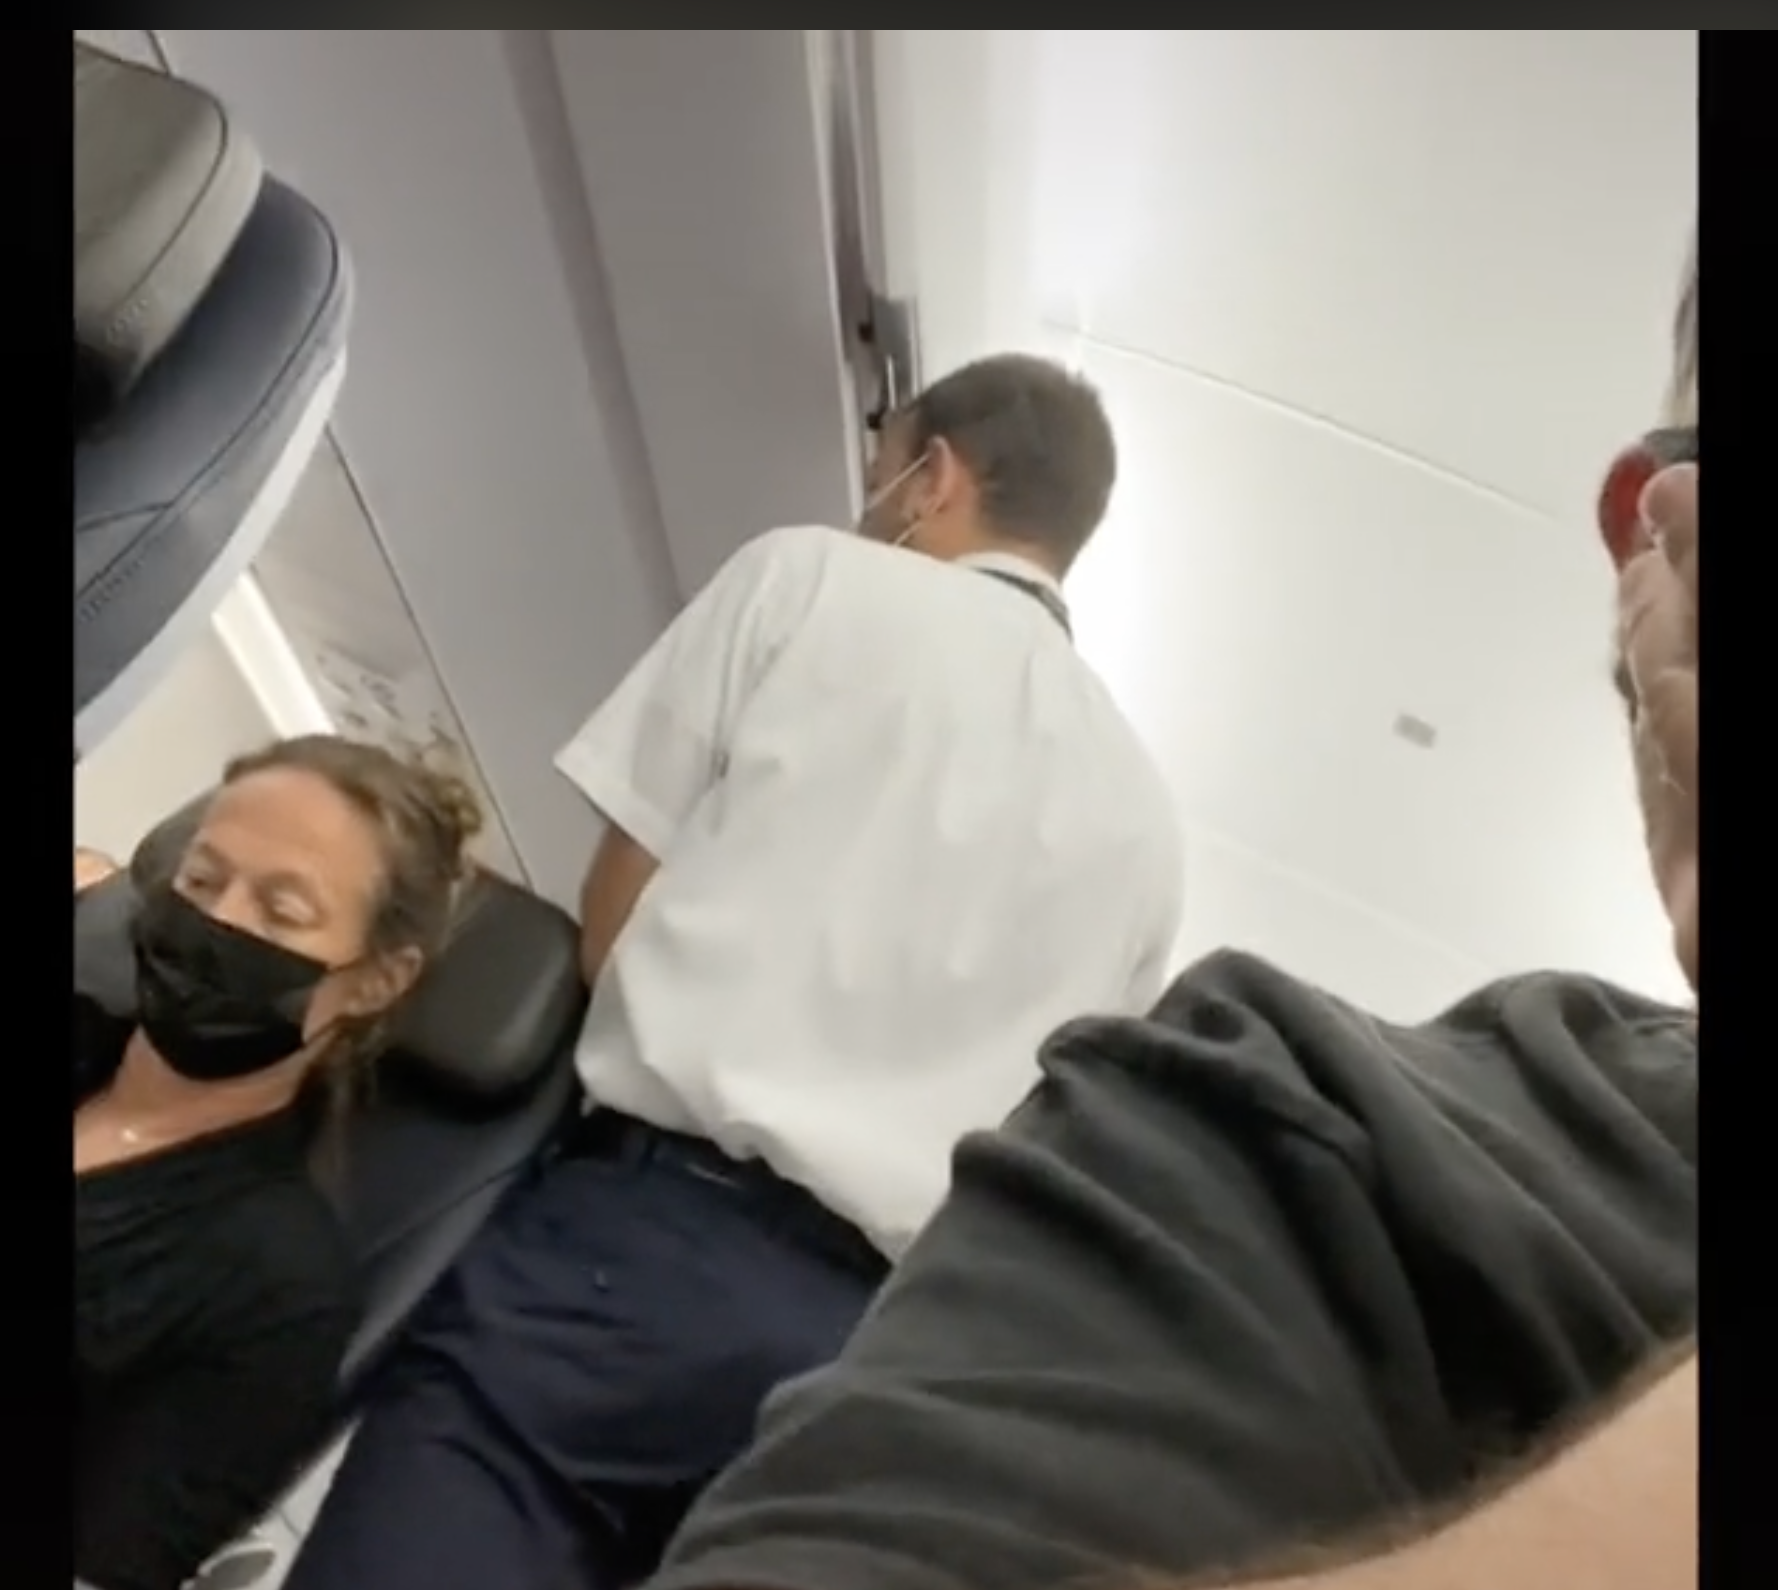 Eine der Flugbegleiterinnen ist im Gespräch mit einem angeblich widerspenstigen Passagier während des Fluges zu sehen. | Quelle: tiktok.com/@brentunderwood